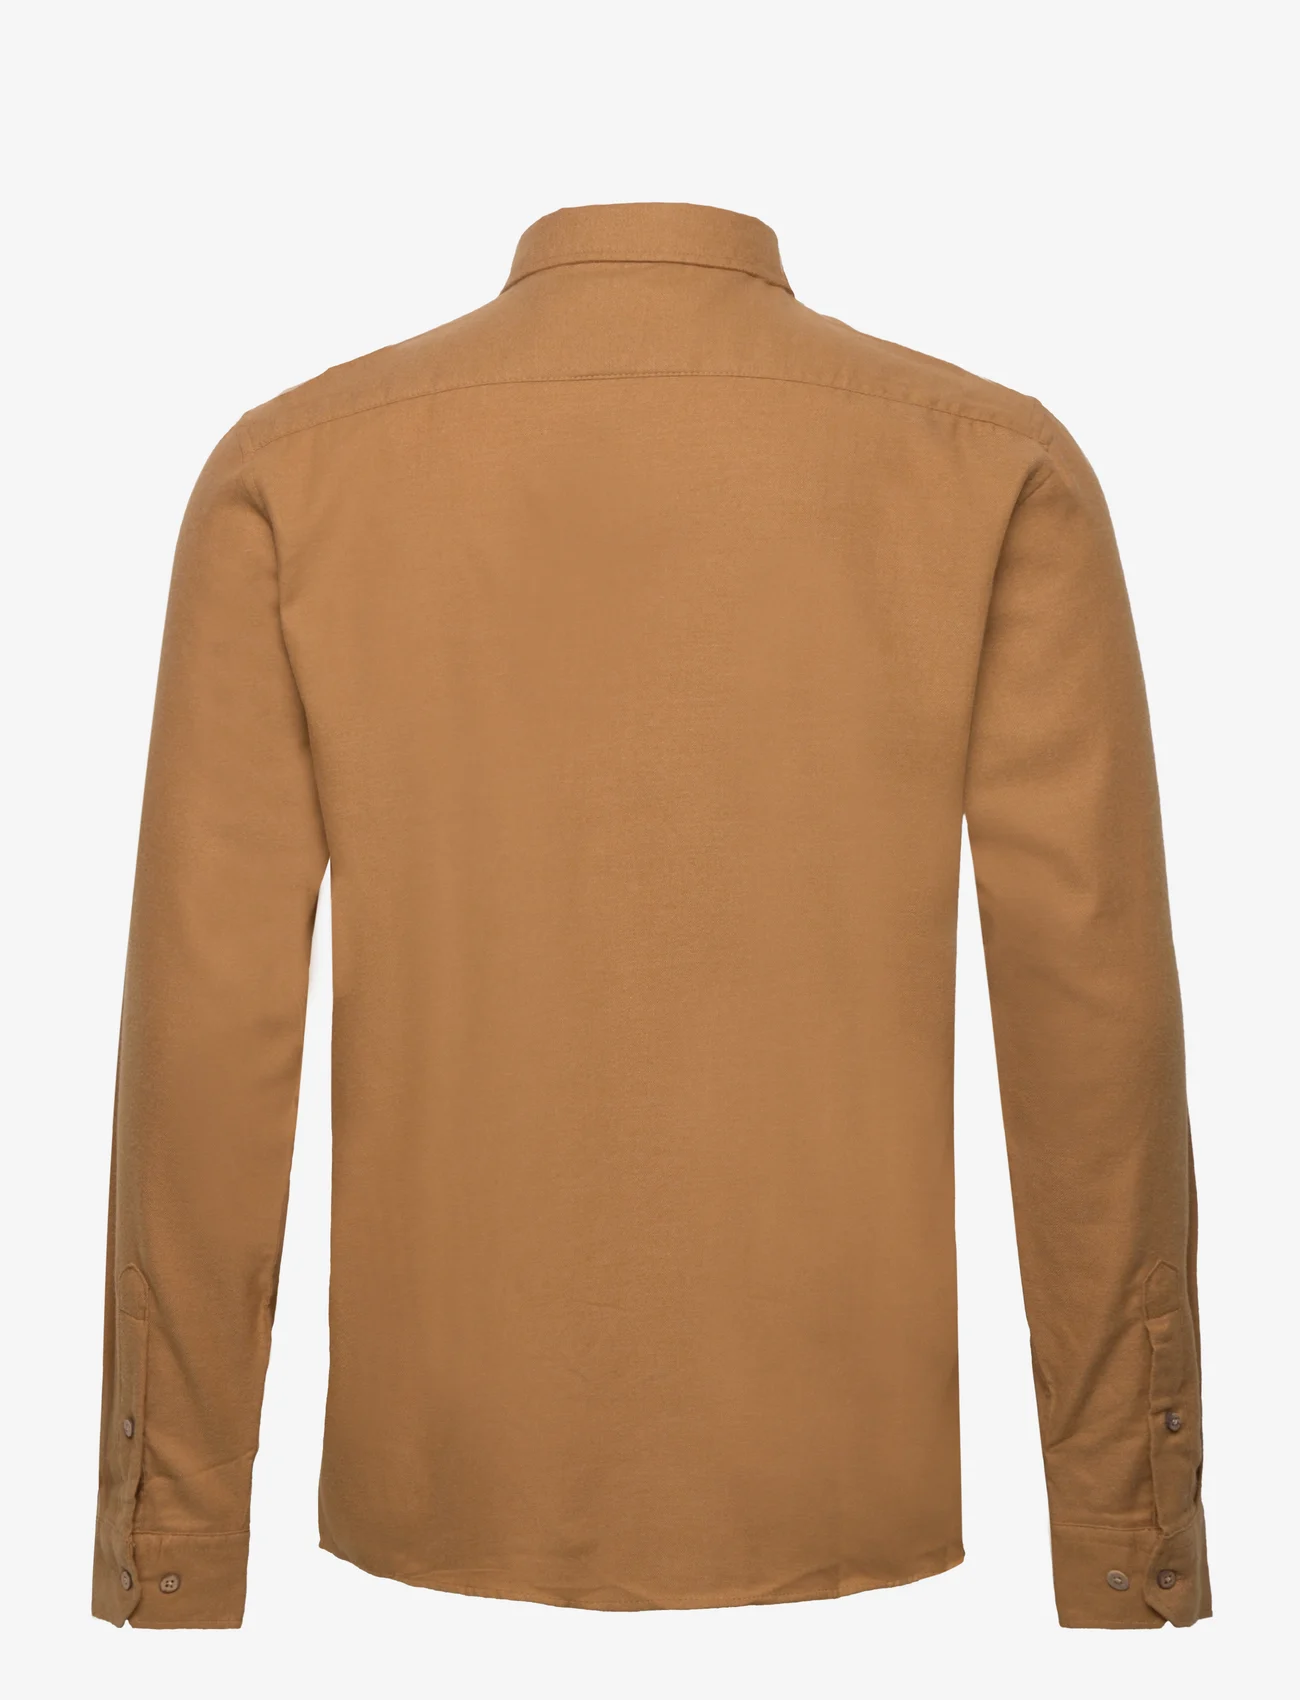 Solid - SDPETE SH - basic skjorter - cinnamon melange - 1